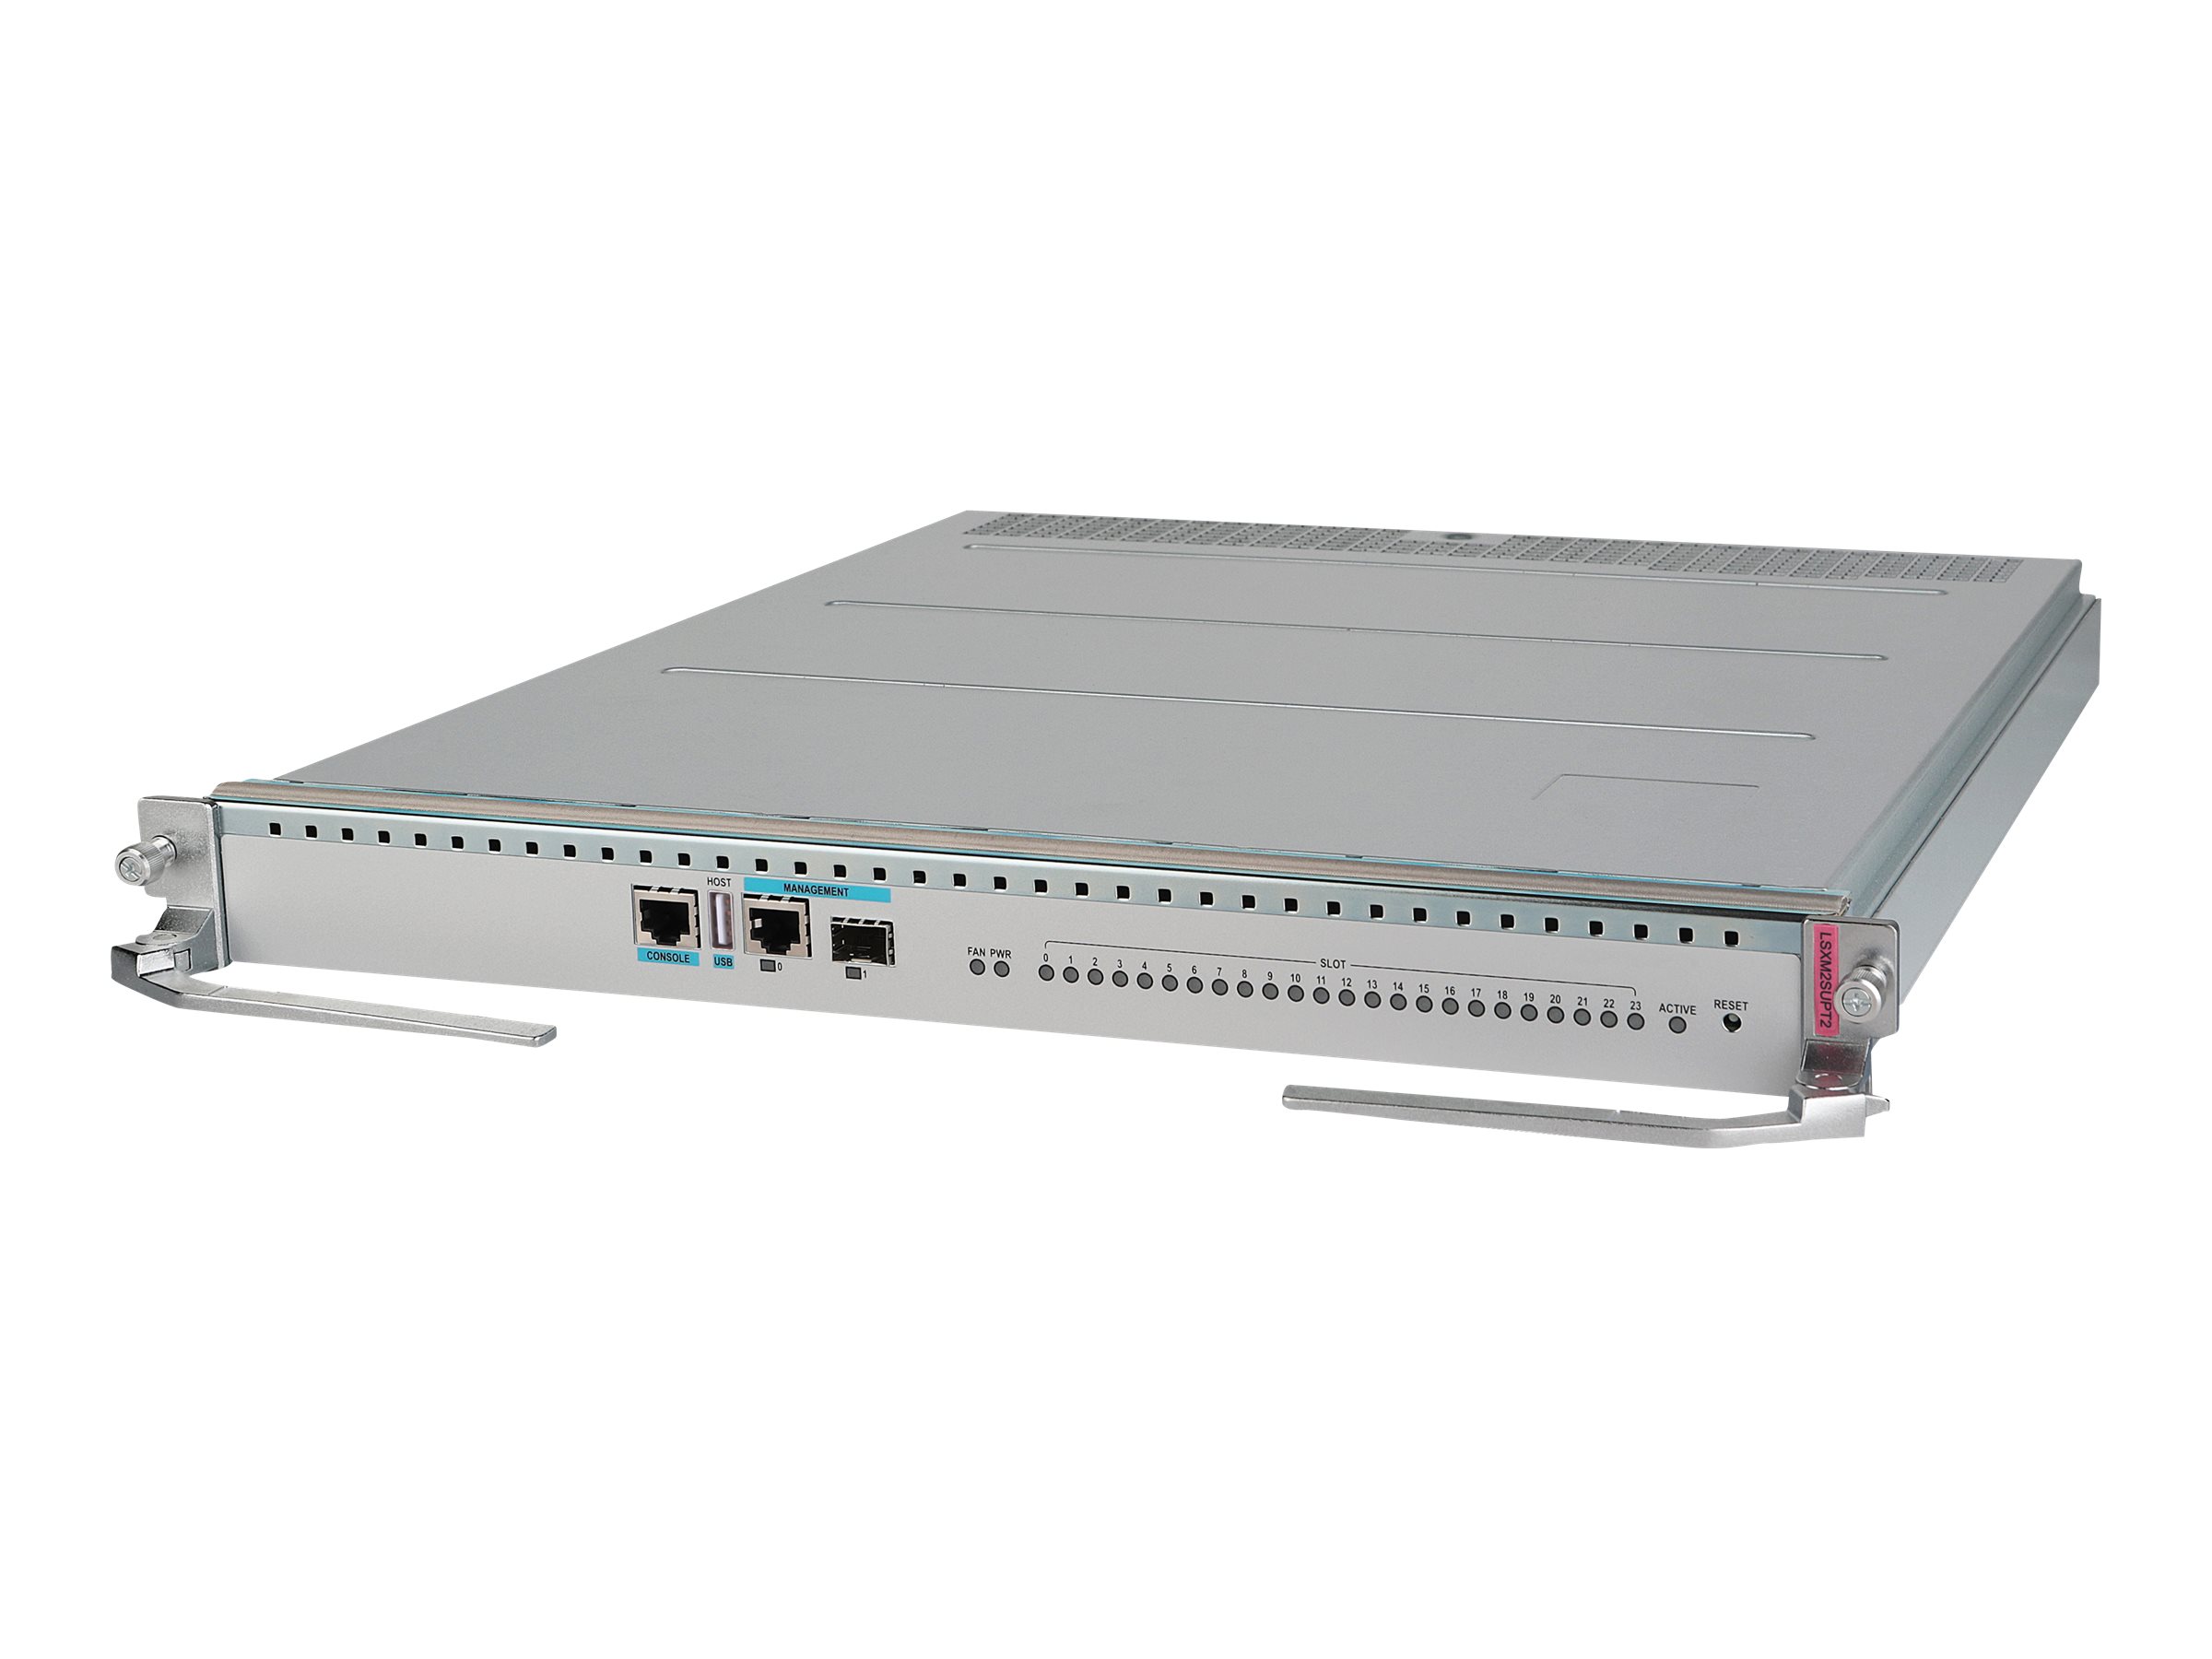 HPE FlexFabric 12900E Type X Main Processing Unit - Steuerungsprozessor - Plug-in-Modul - für FlexFabric 12900E 36-Port